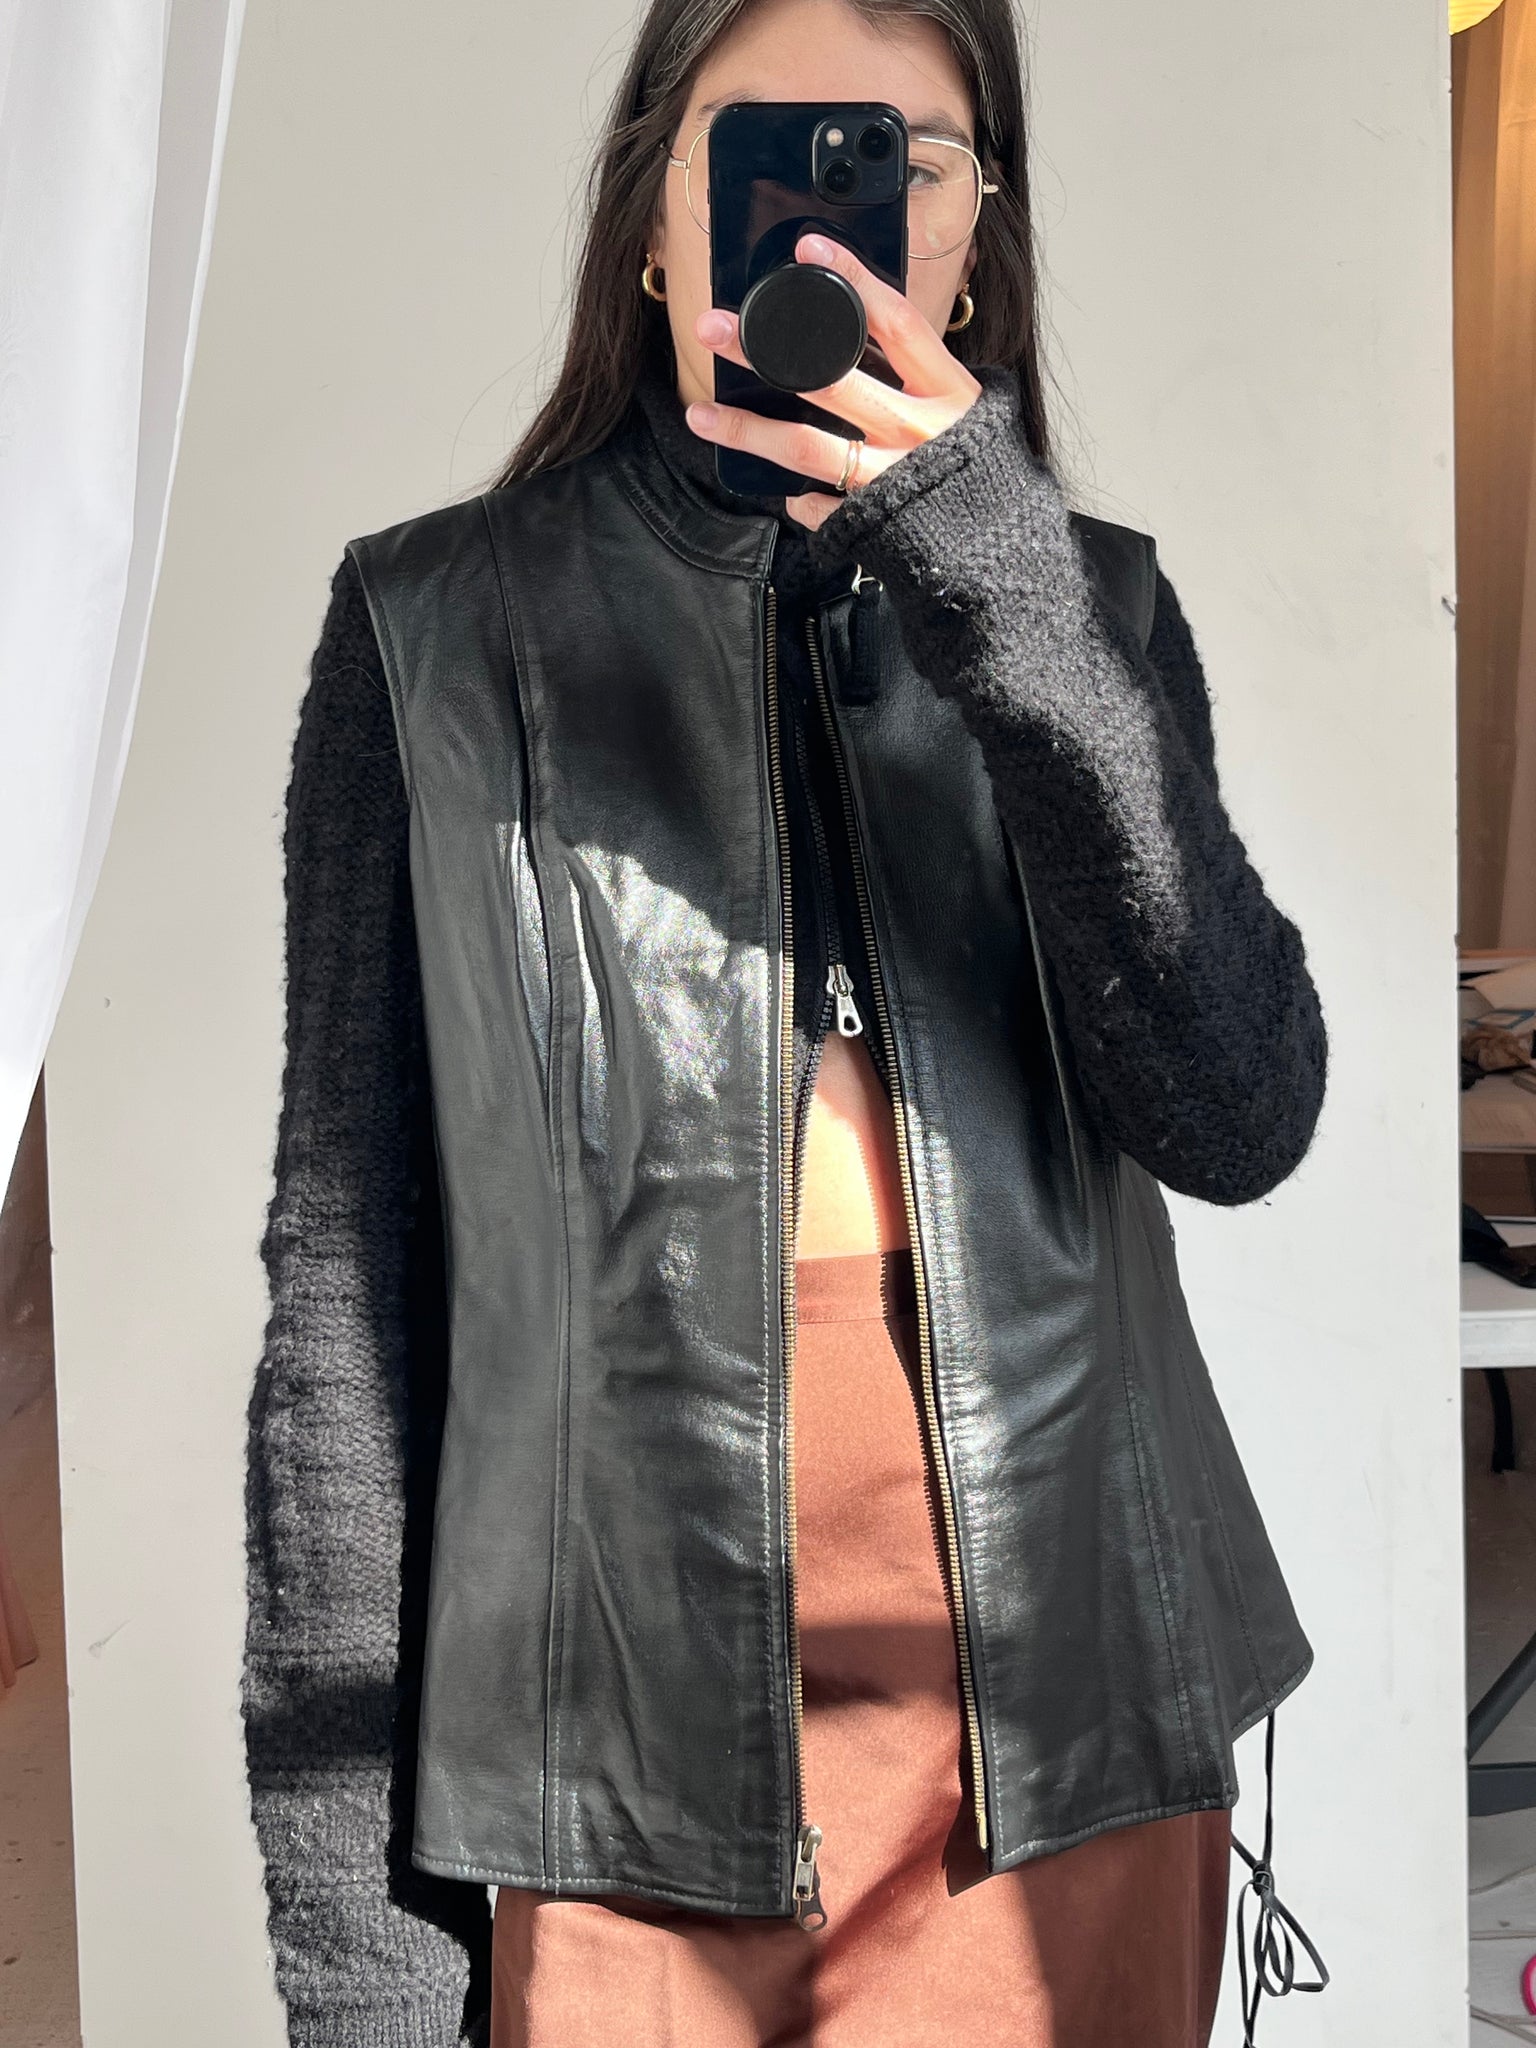 Lace-up black leather vest